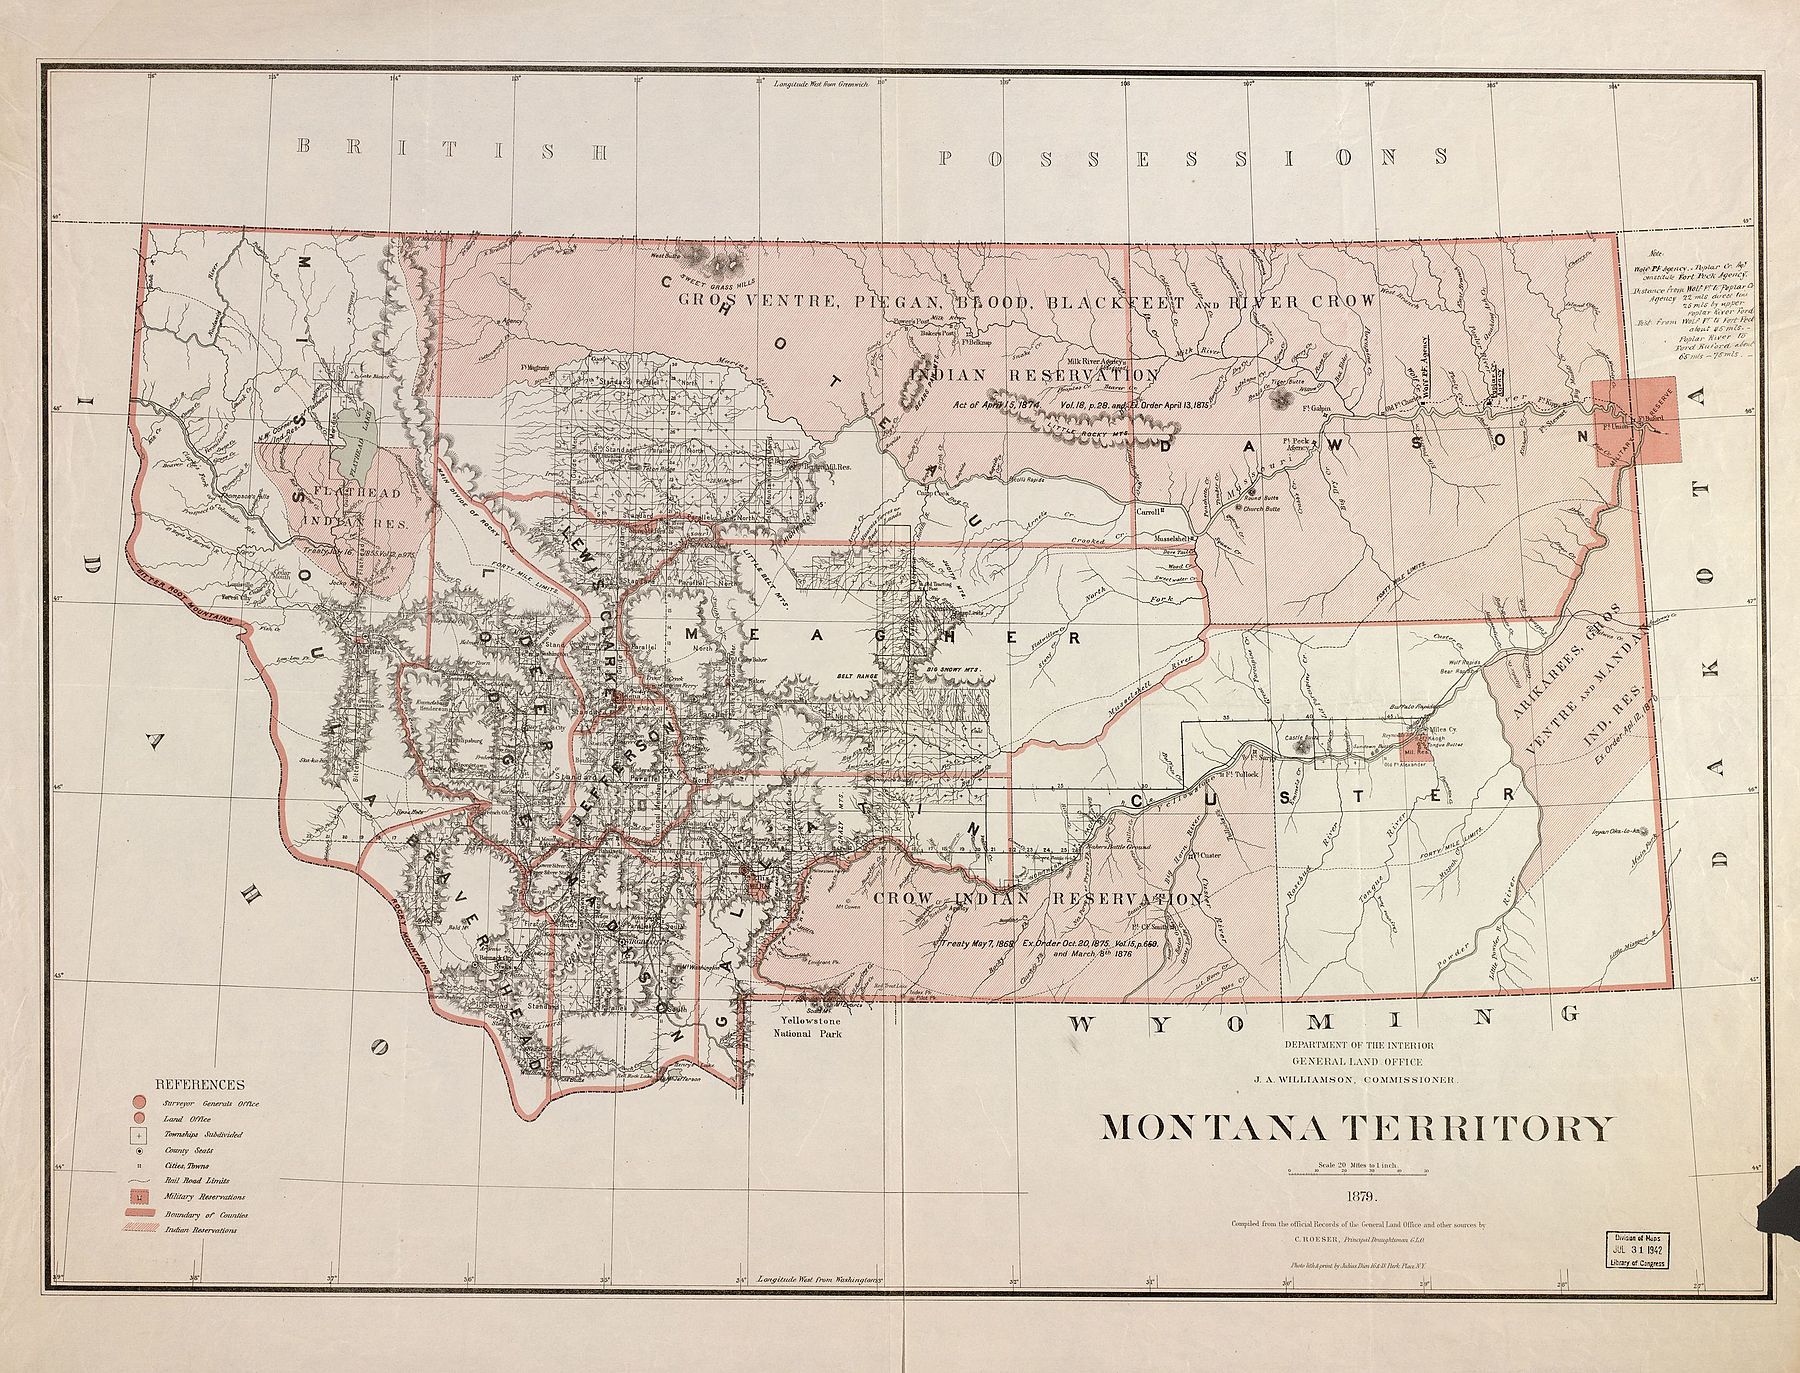 Вуд-младший служил в Вулф-Пойнт и Поплар-Крик на северо-востоке территории Монтана с 1880 по 1889 год. В 1878 г. Индейское агентство Форт-Пек было перемещено из того места, которое показано на карте, в его нынешнее местоположение в Попларе, потому что первоначальное агентство располагалось на пойме реки, страдая от наводнений в верховьях реки Миссури каждую весну. 